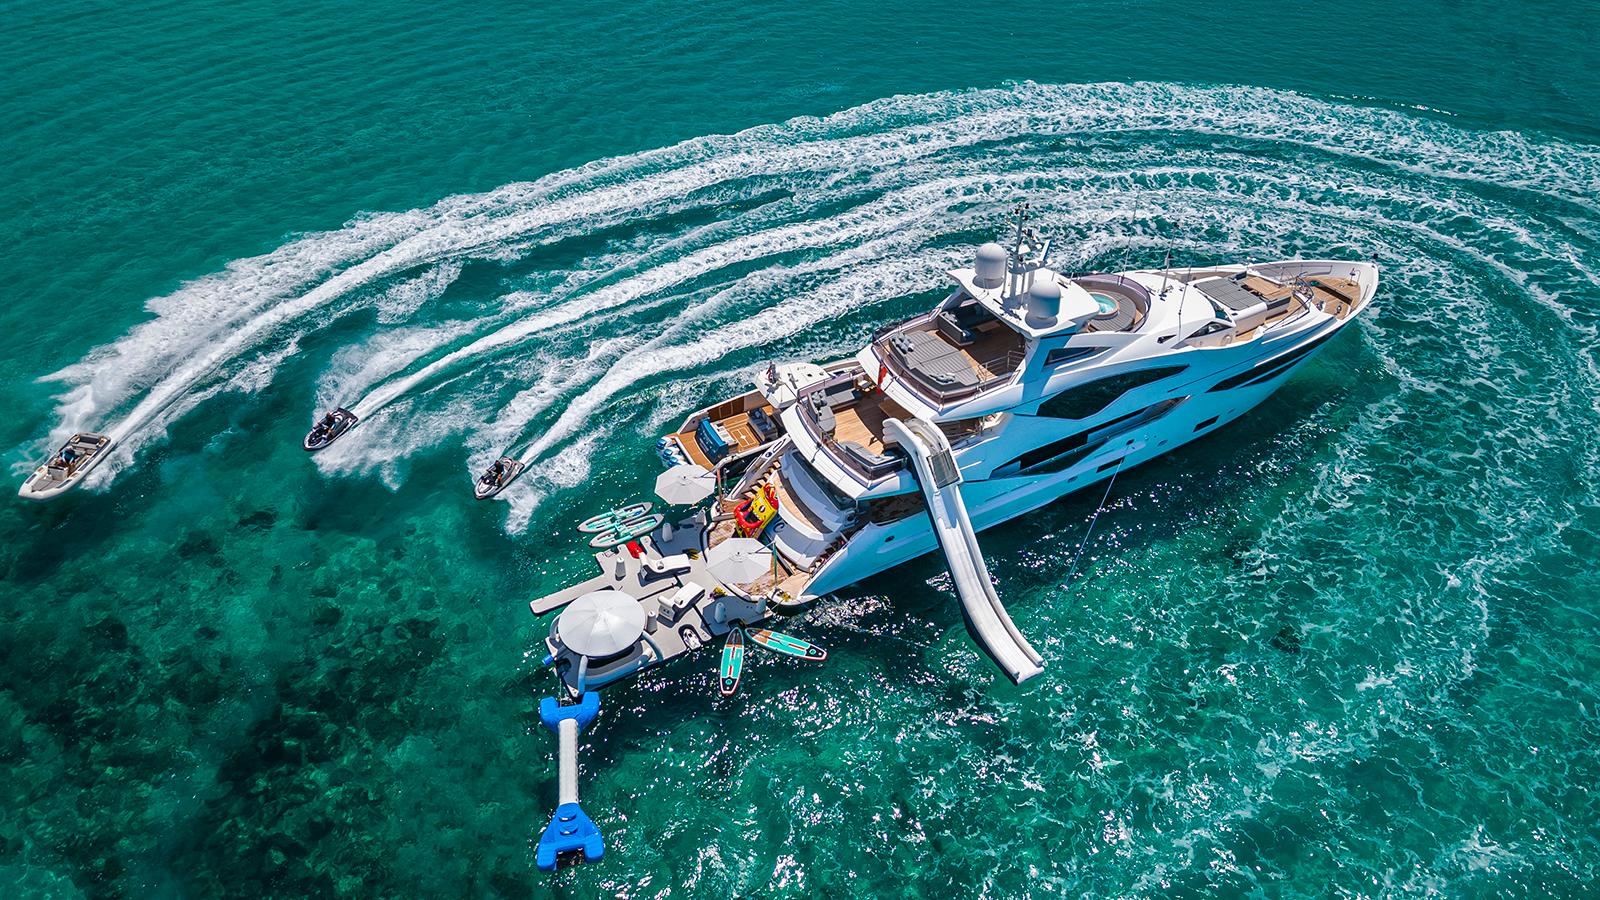 2020 Palm Beach 131 yacht